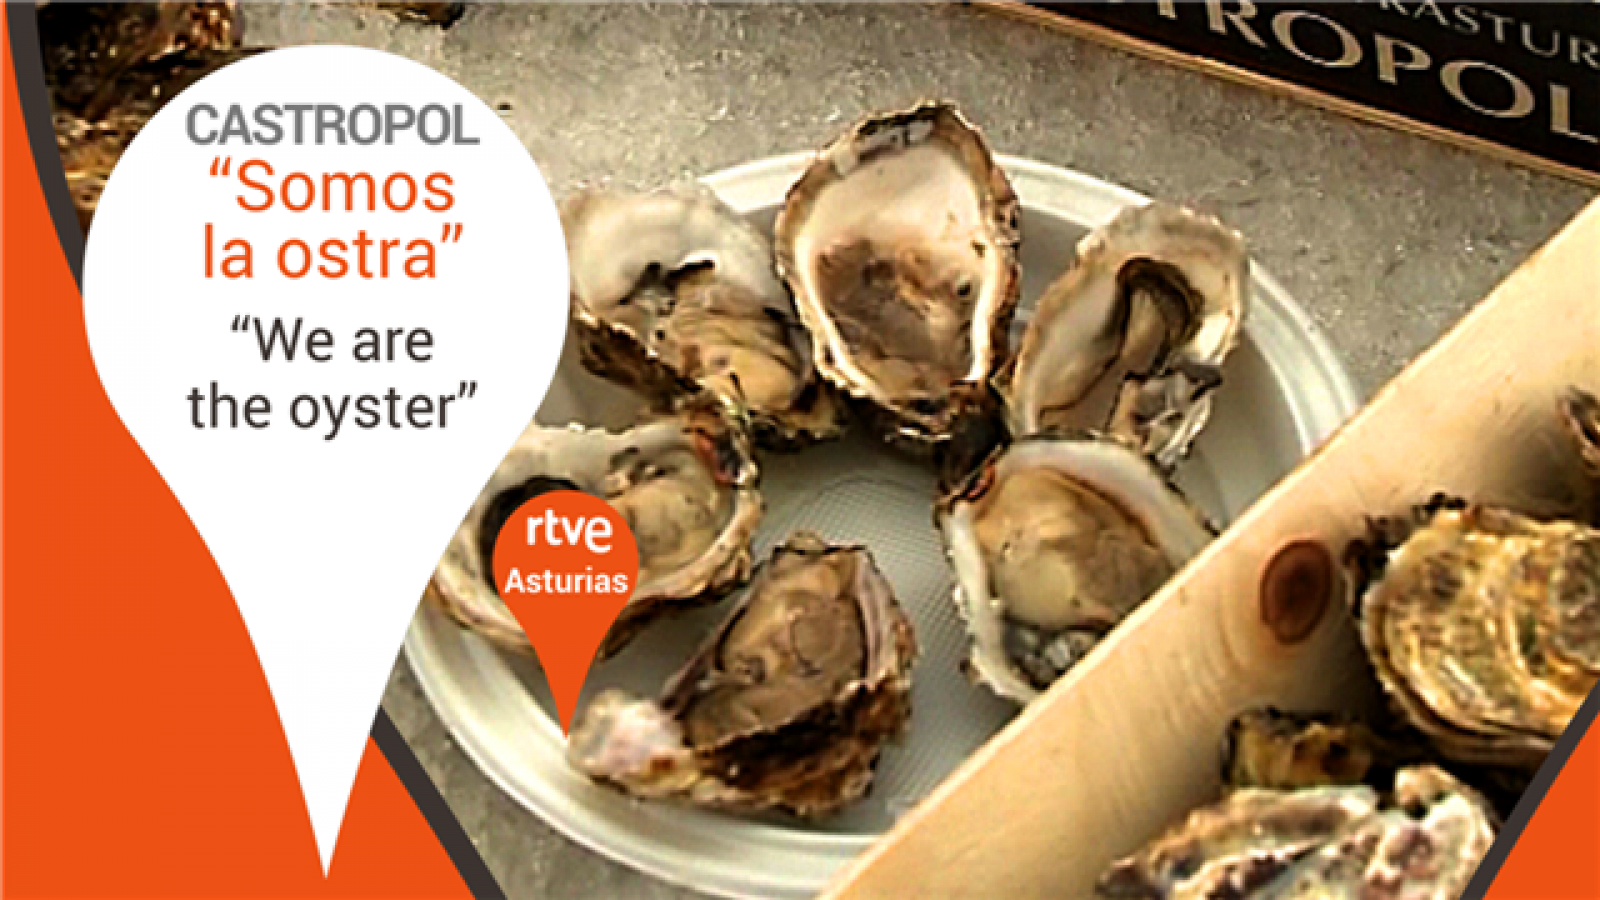 Somos la ostra - Castropol, Asturias - We are the oyster.